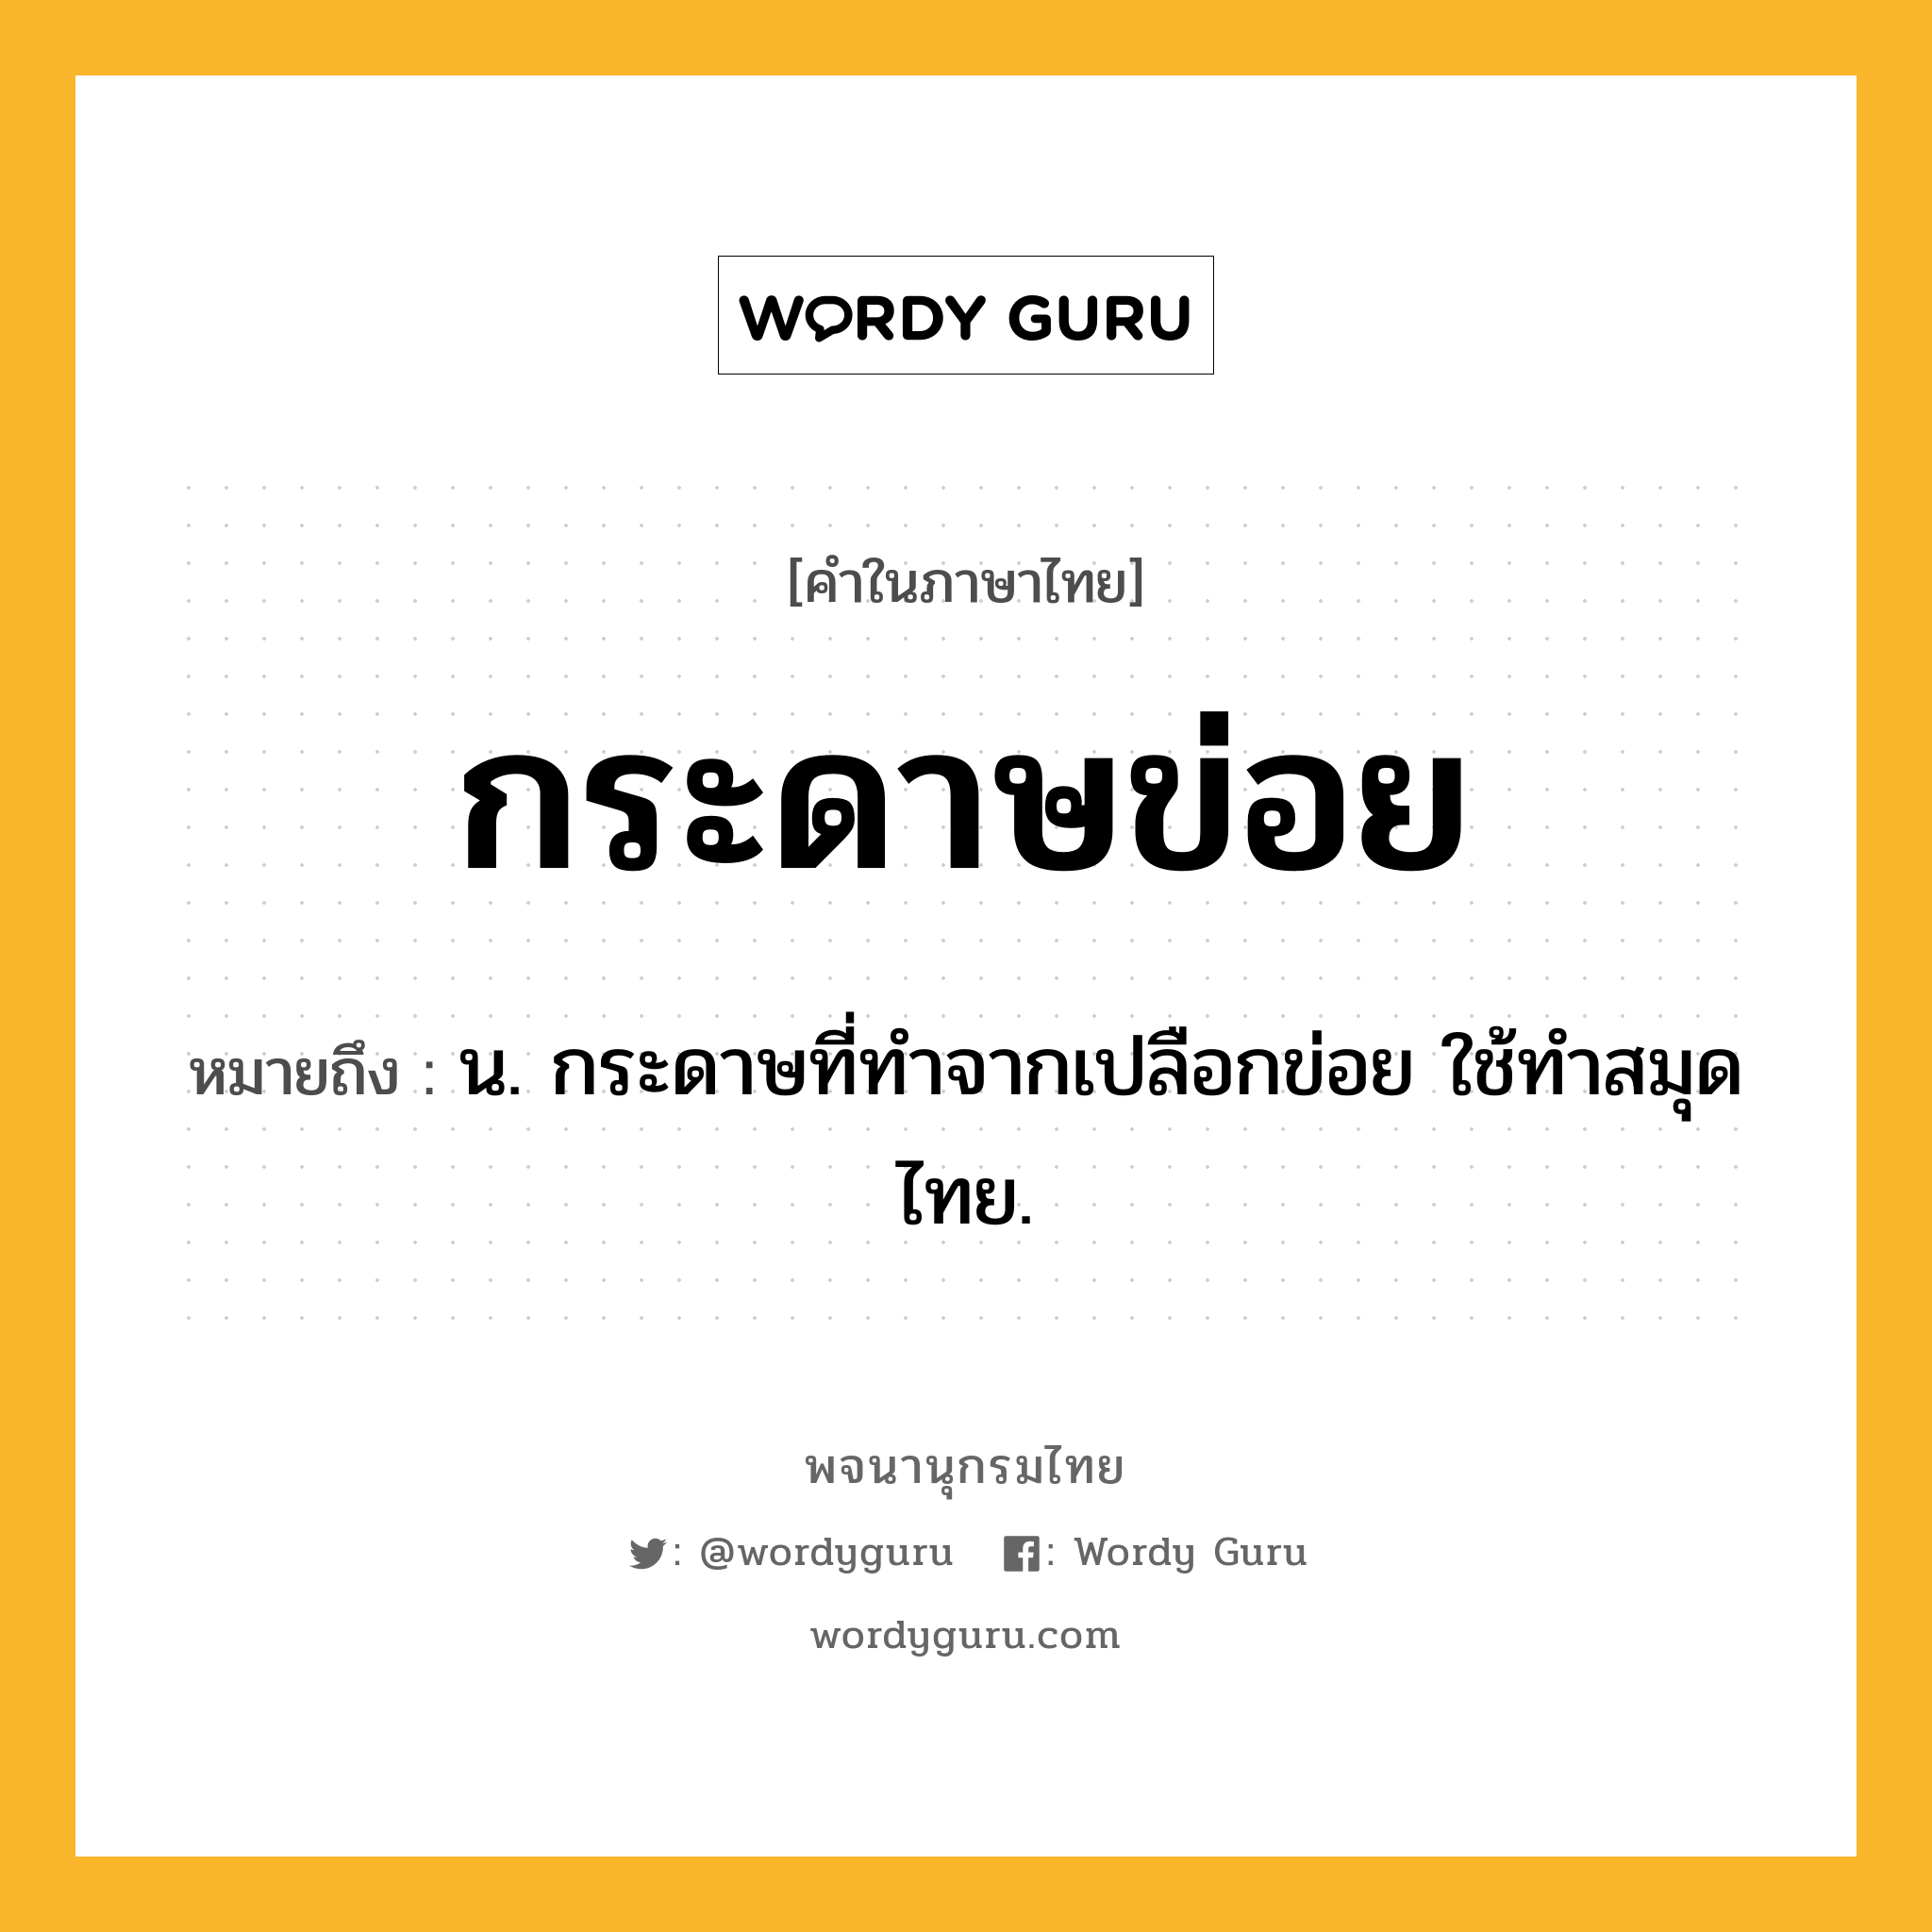 กระดาษข่อย หมายถึงอะไร?, คำในภาษาไทย กระดาษข่อย หมายถึง น. กระดาษที่ทําจากเปลือกข่อย ใช้ทำสมุดไทย.